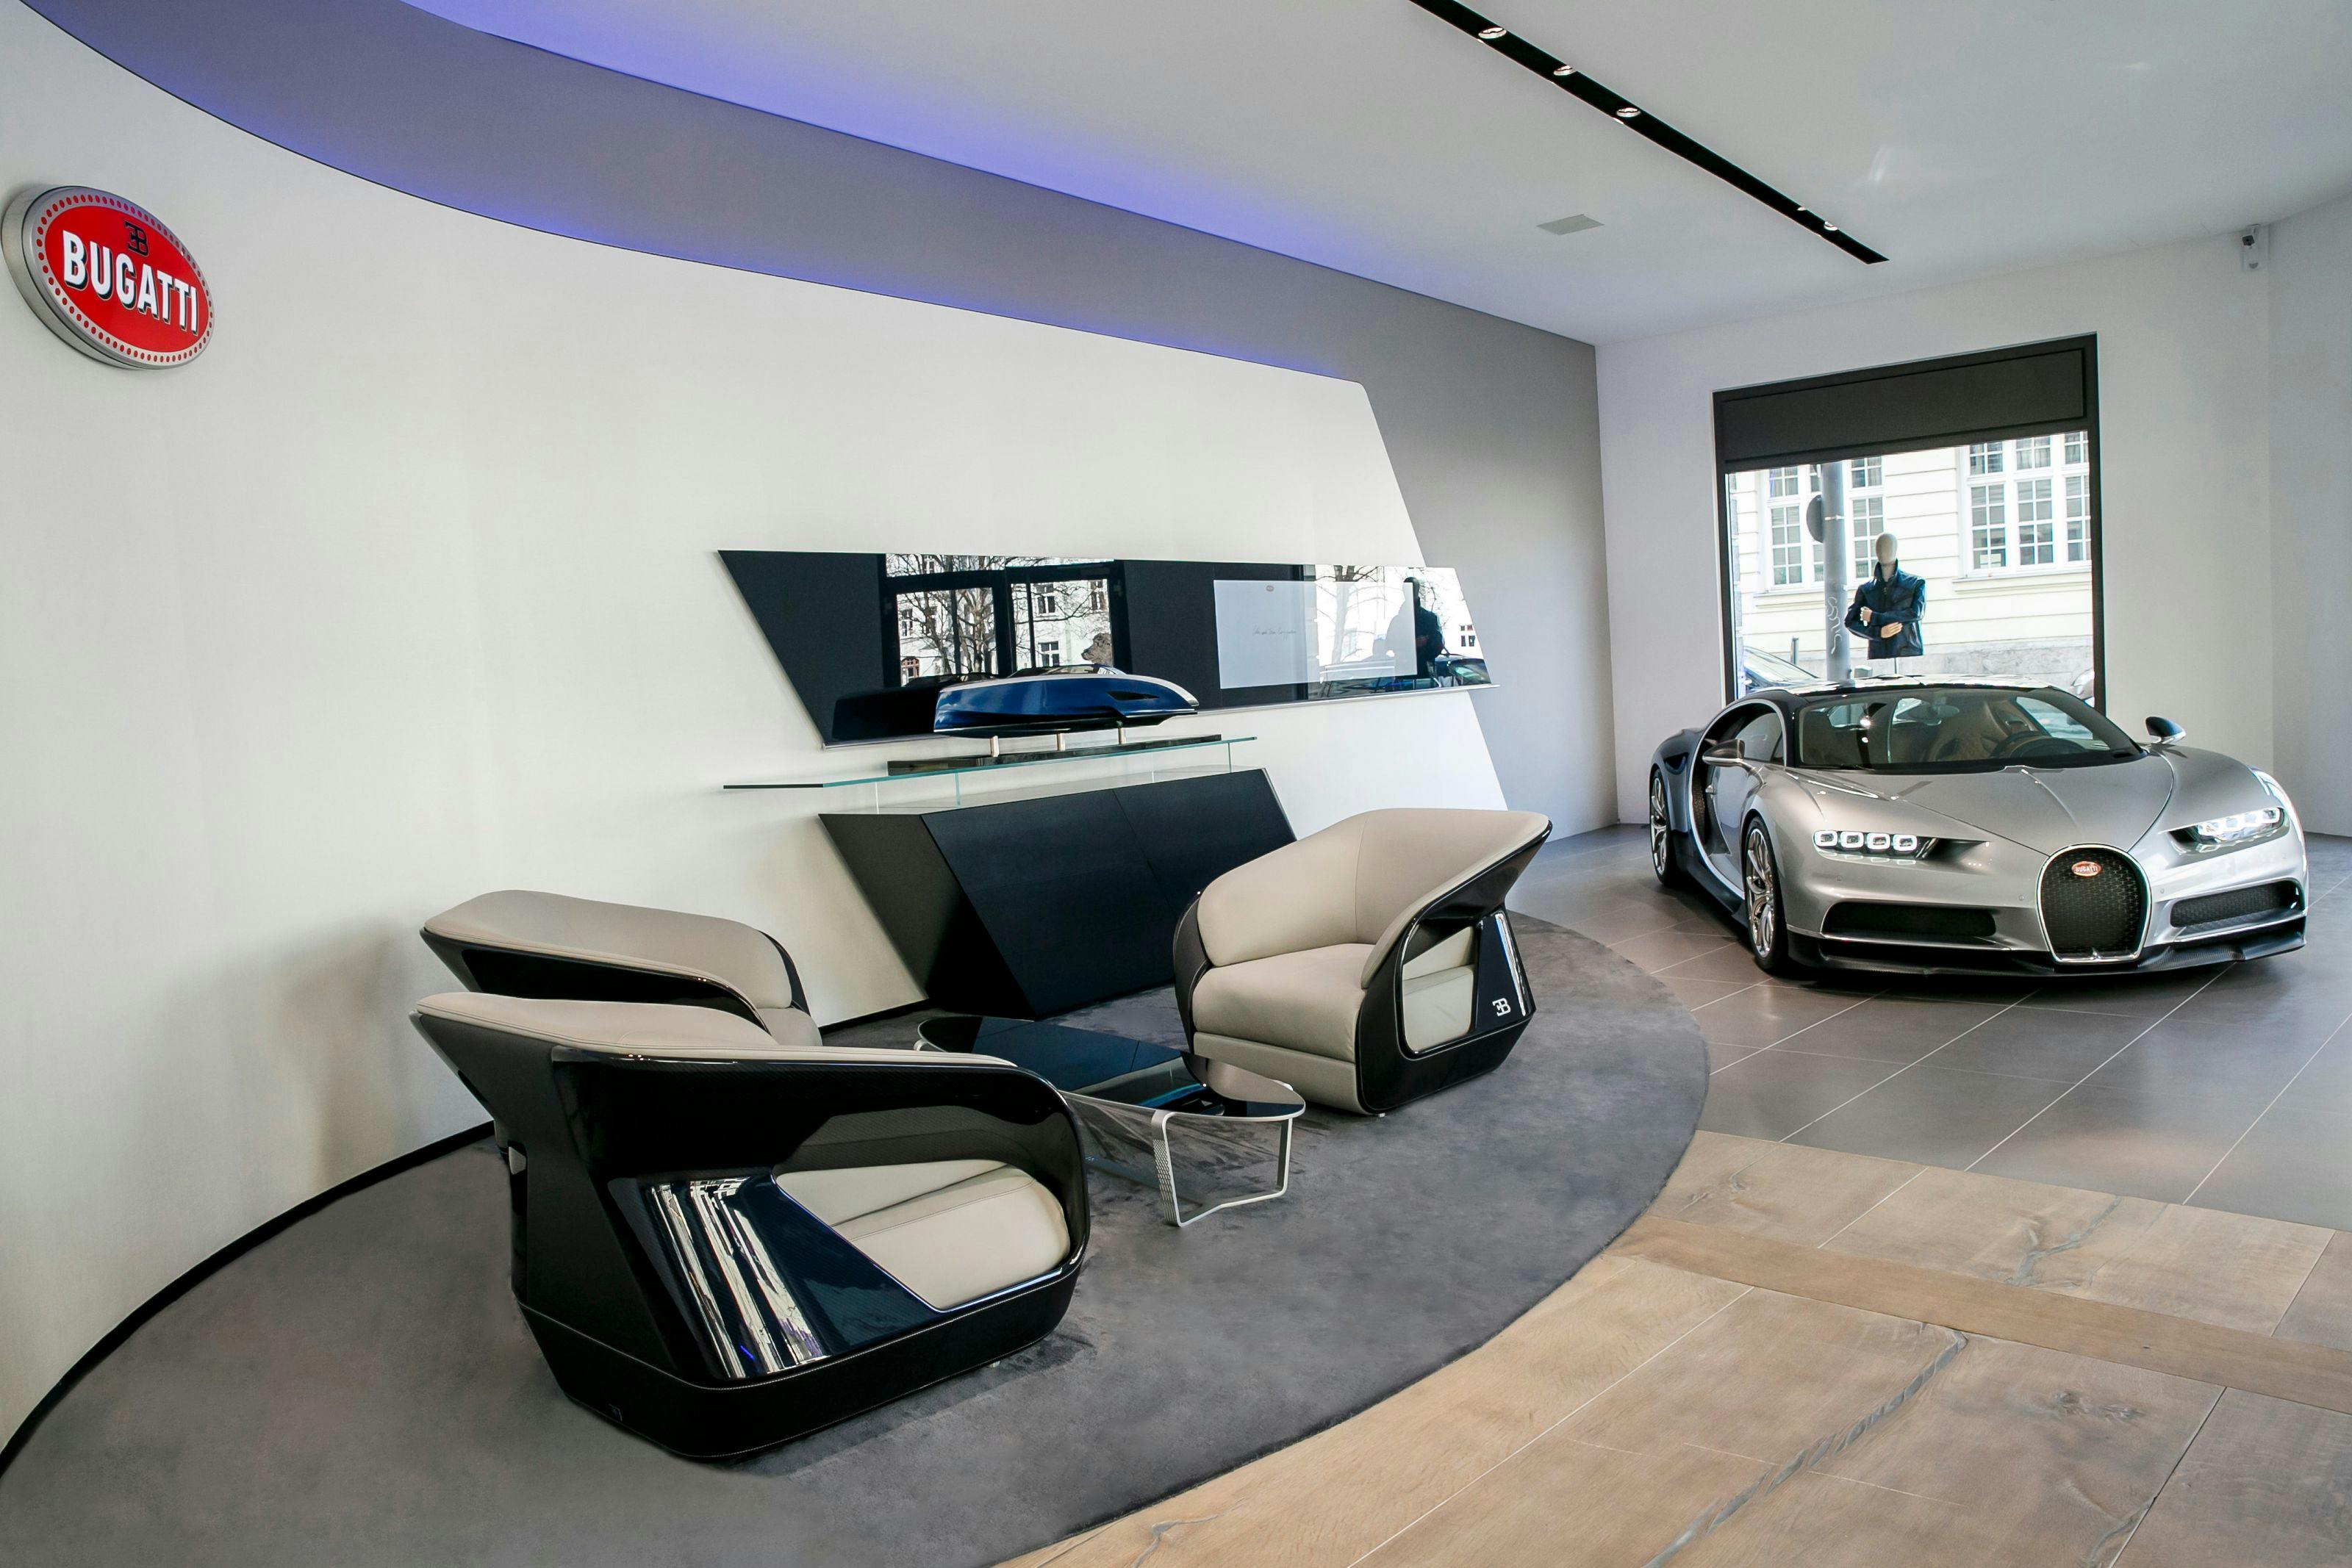 Bugatti eröffnet mit Showroom und Lifestyle-Boutique neue automobile Luxus-Adresse in München